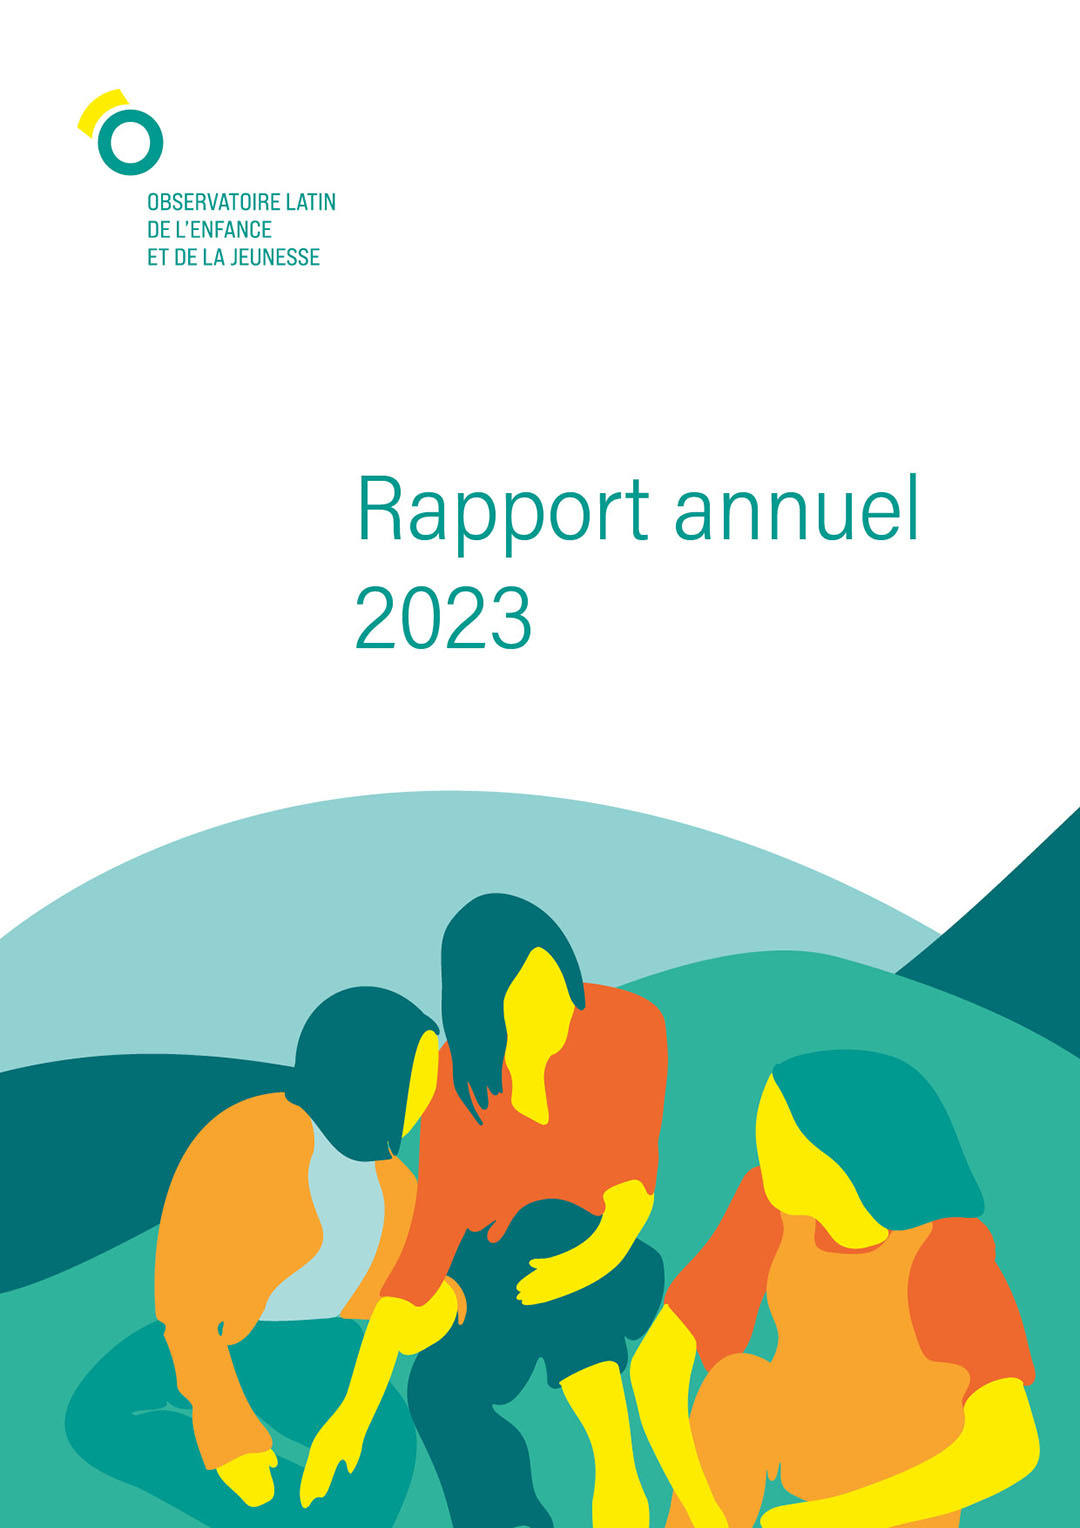 Couverture du Rapport annuel 2023 de l'Observatoire latin de l'enfance et de la jeunesse (OLEJ)